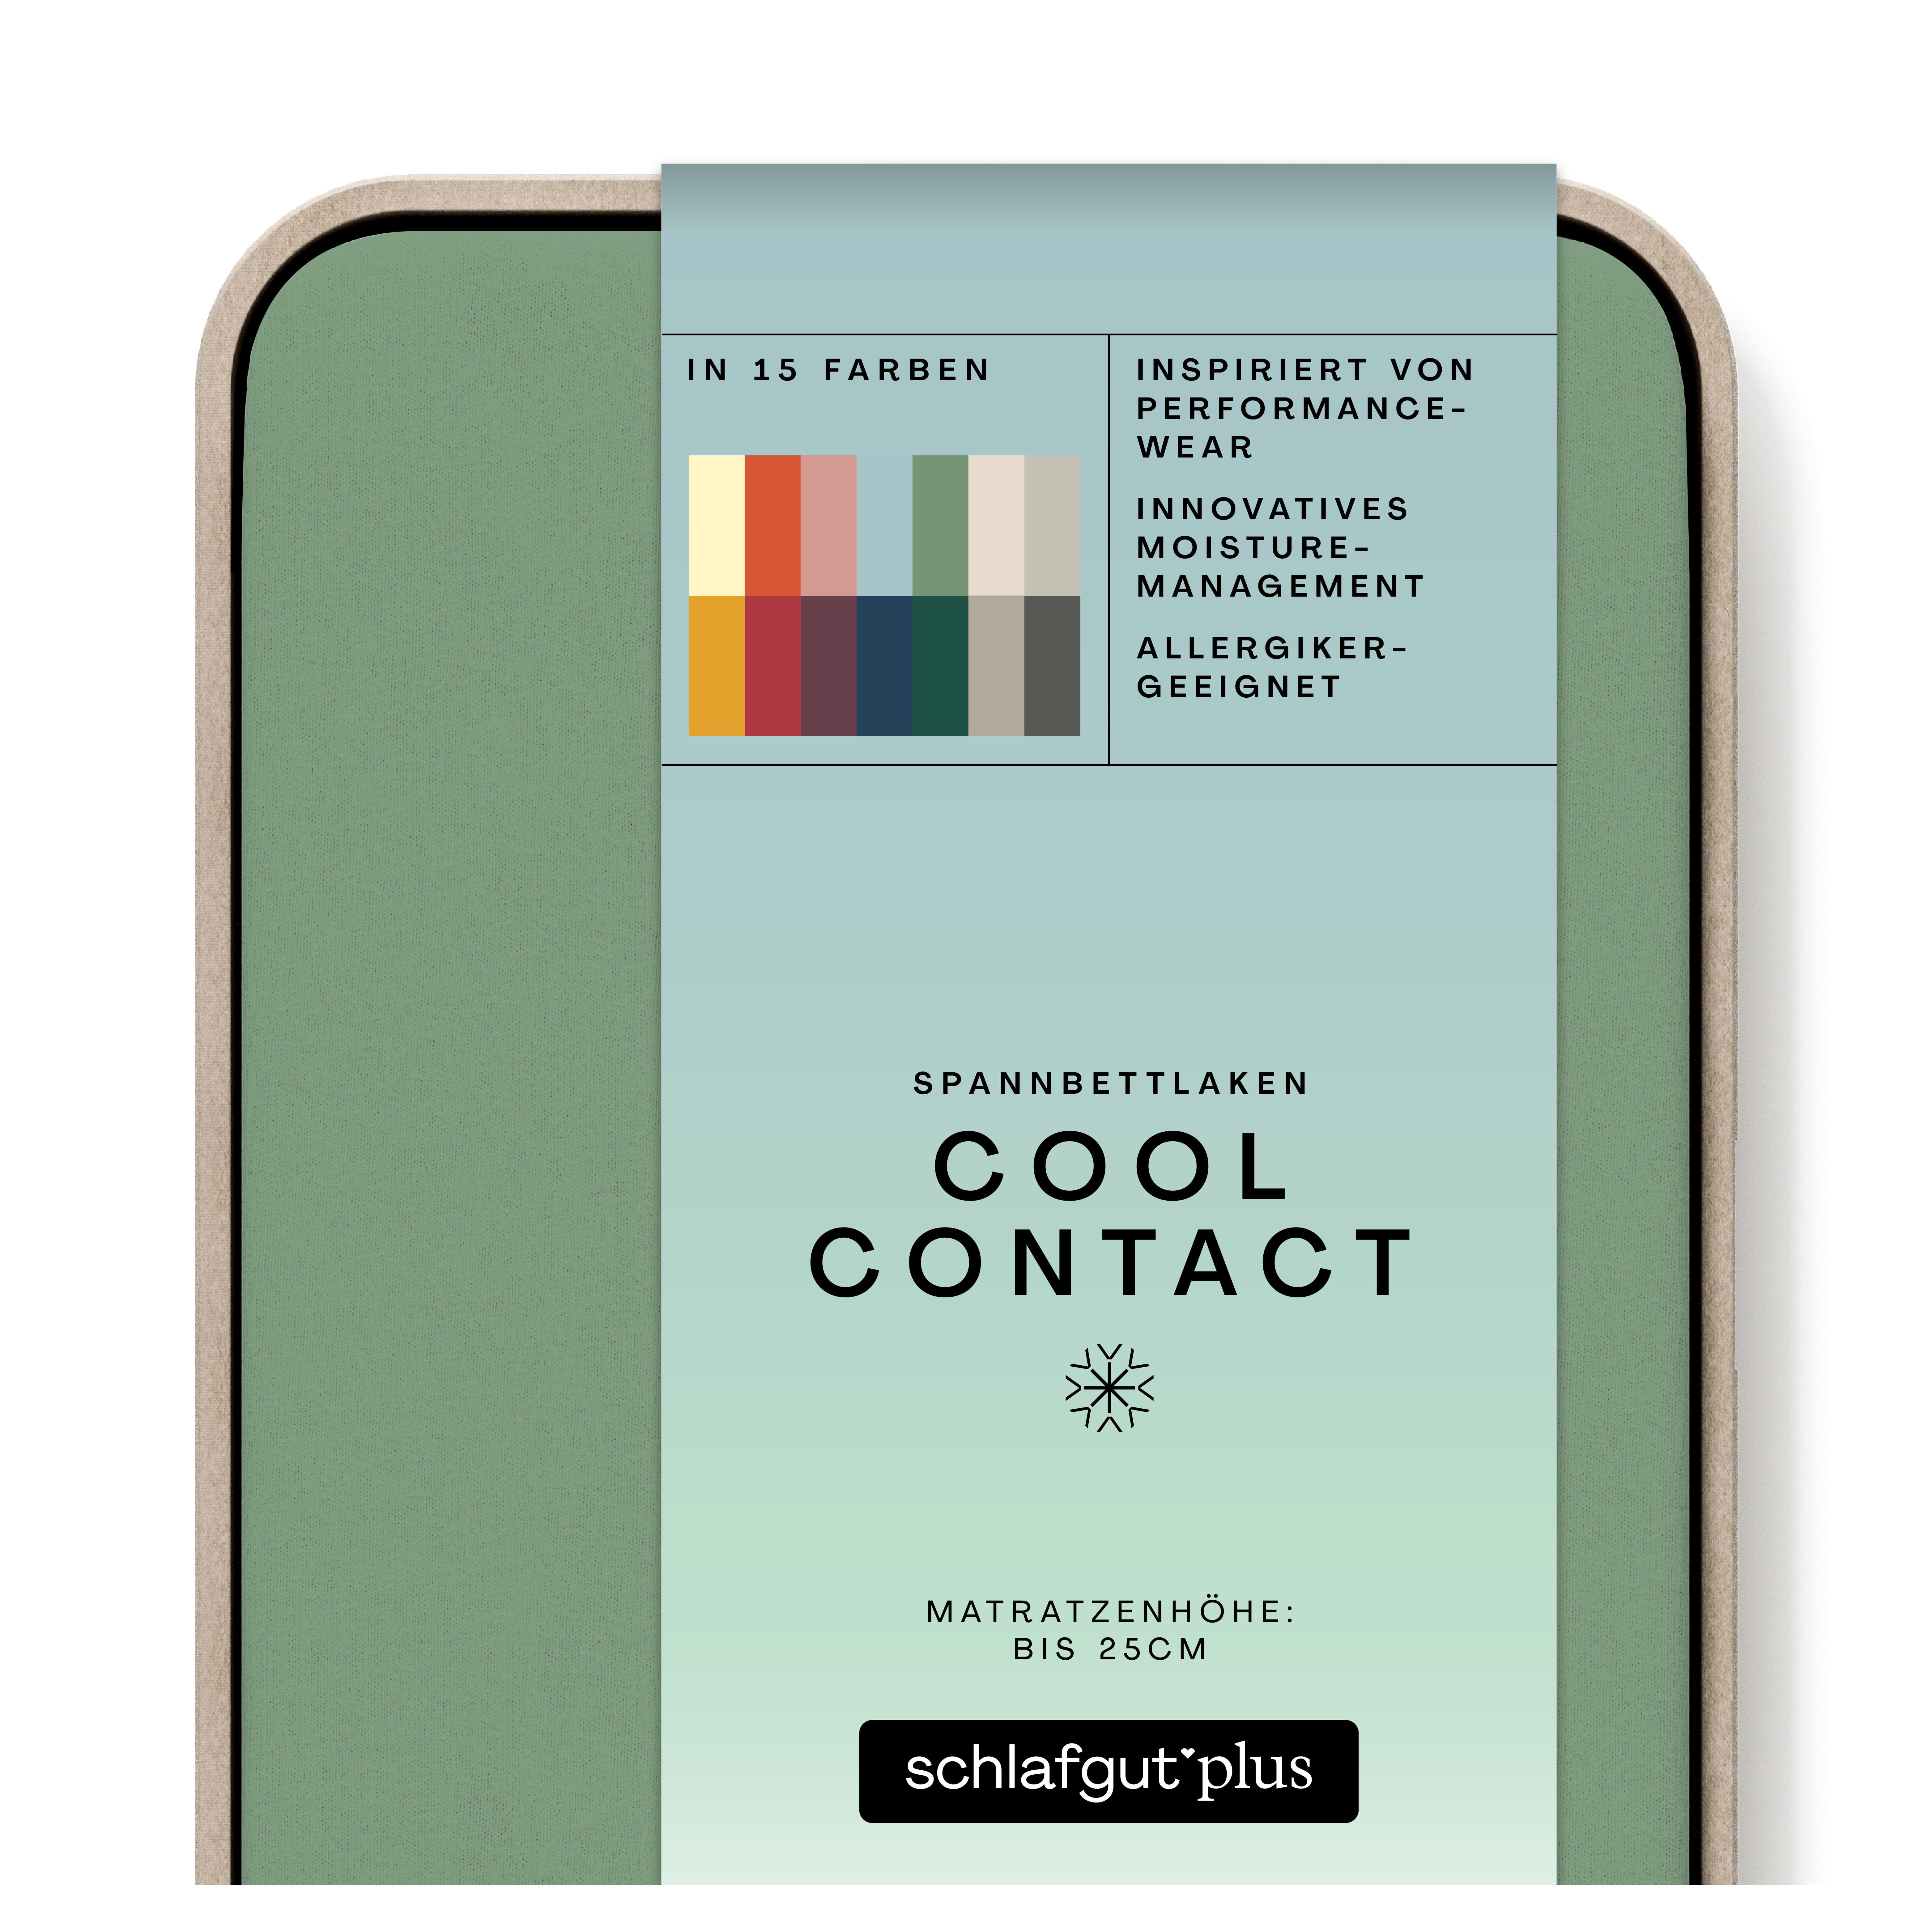 Das Produktbild vom Spannbettlaken der Reihe Cool Contact in Farbe green mid von Schlafgut